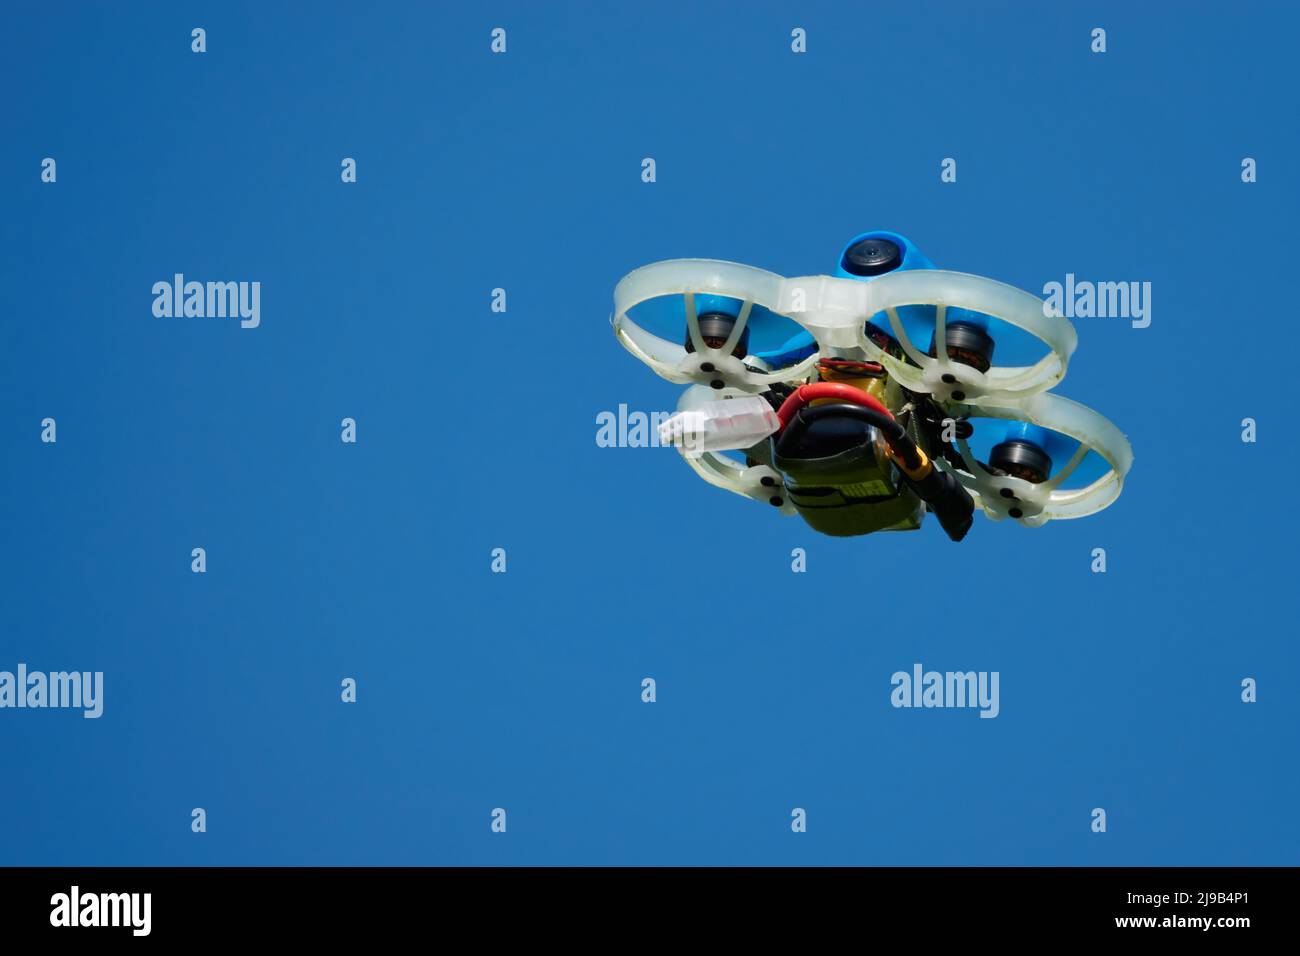 Petit Drone bleu également quad de course, avec la gondole de protection en blanc avec un ciel bleu. Photographié de dessous.Allemagne. Banque D'Images